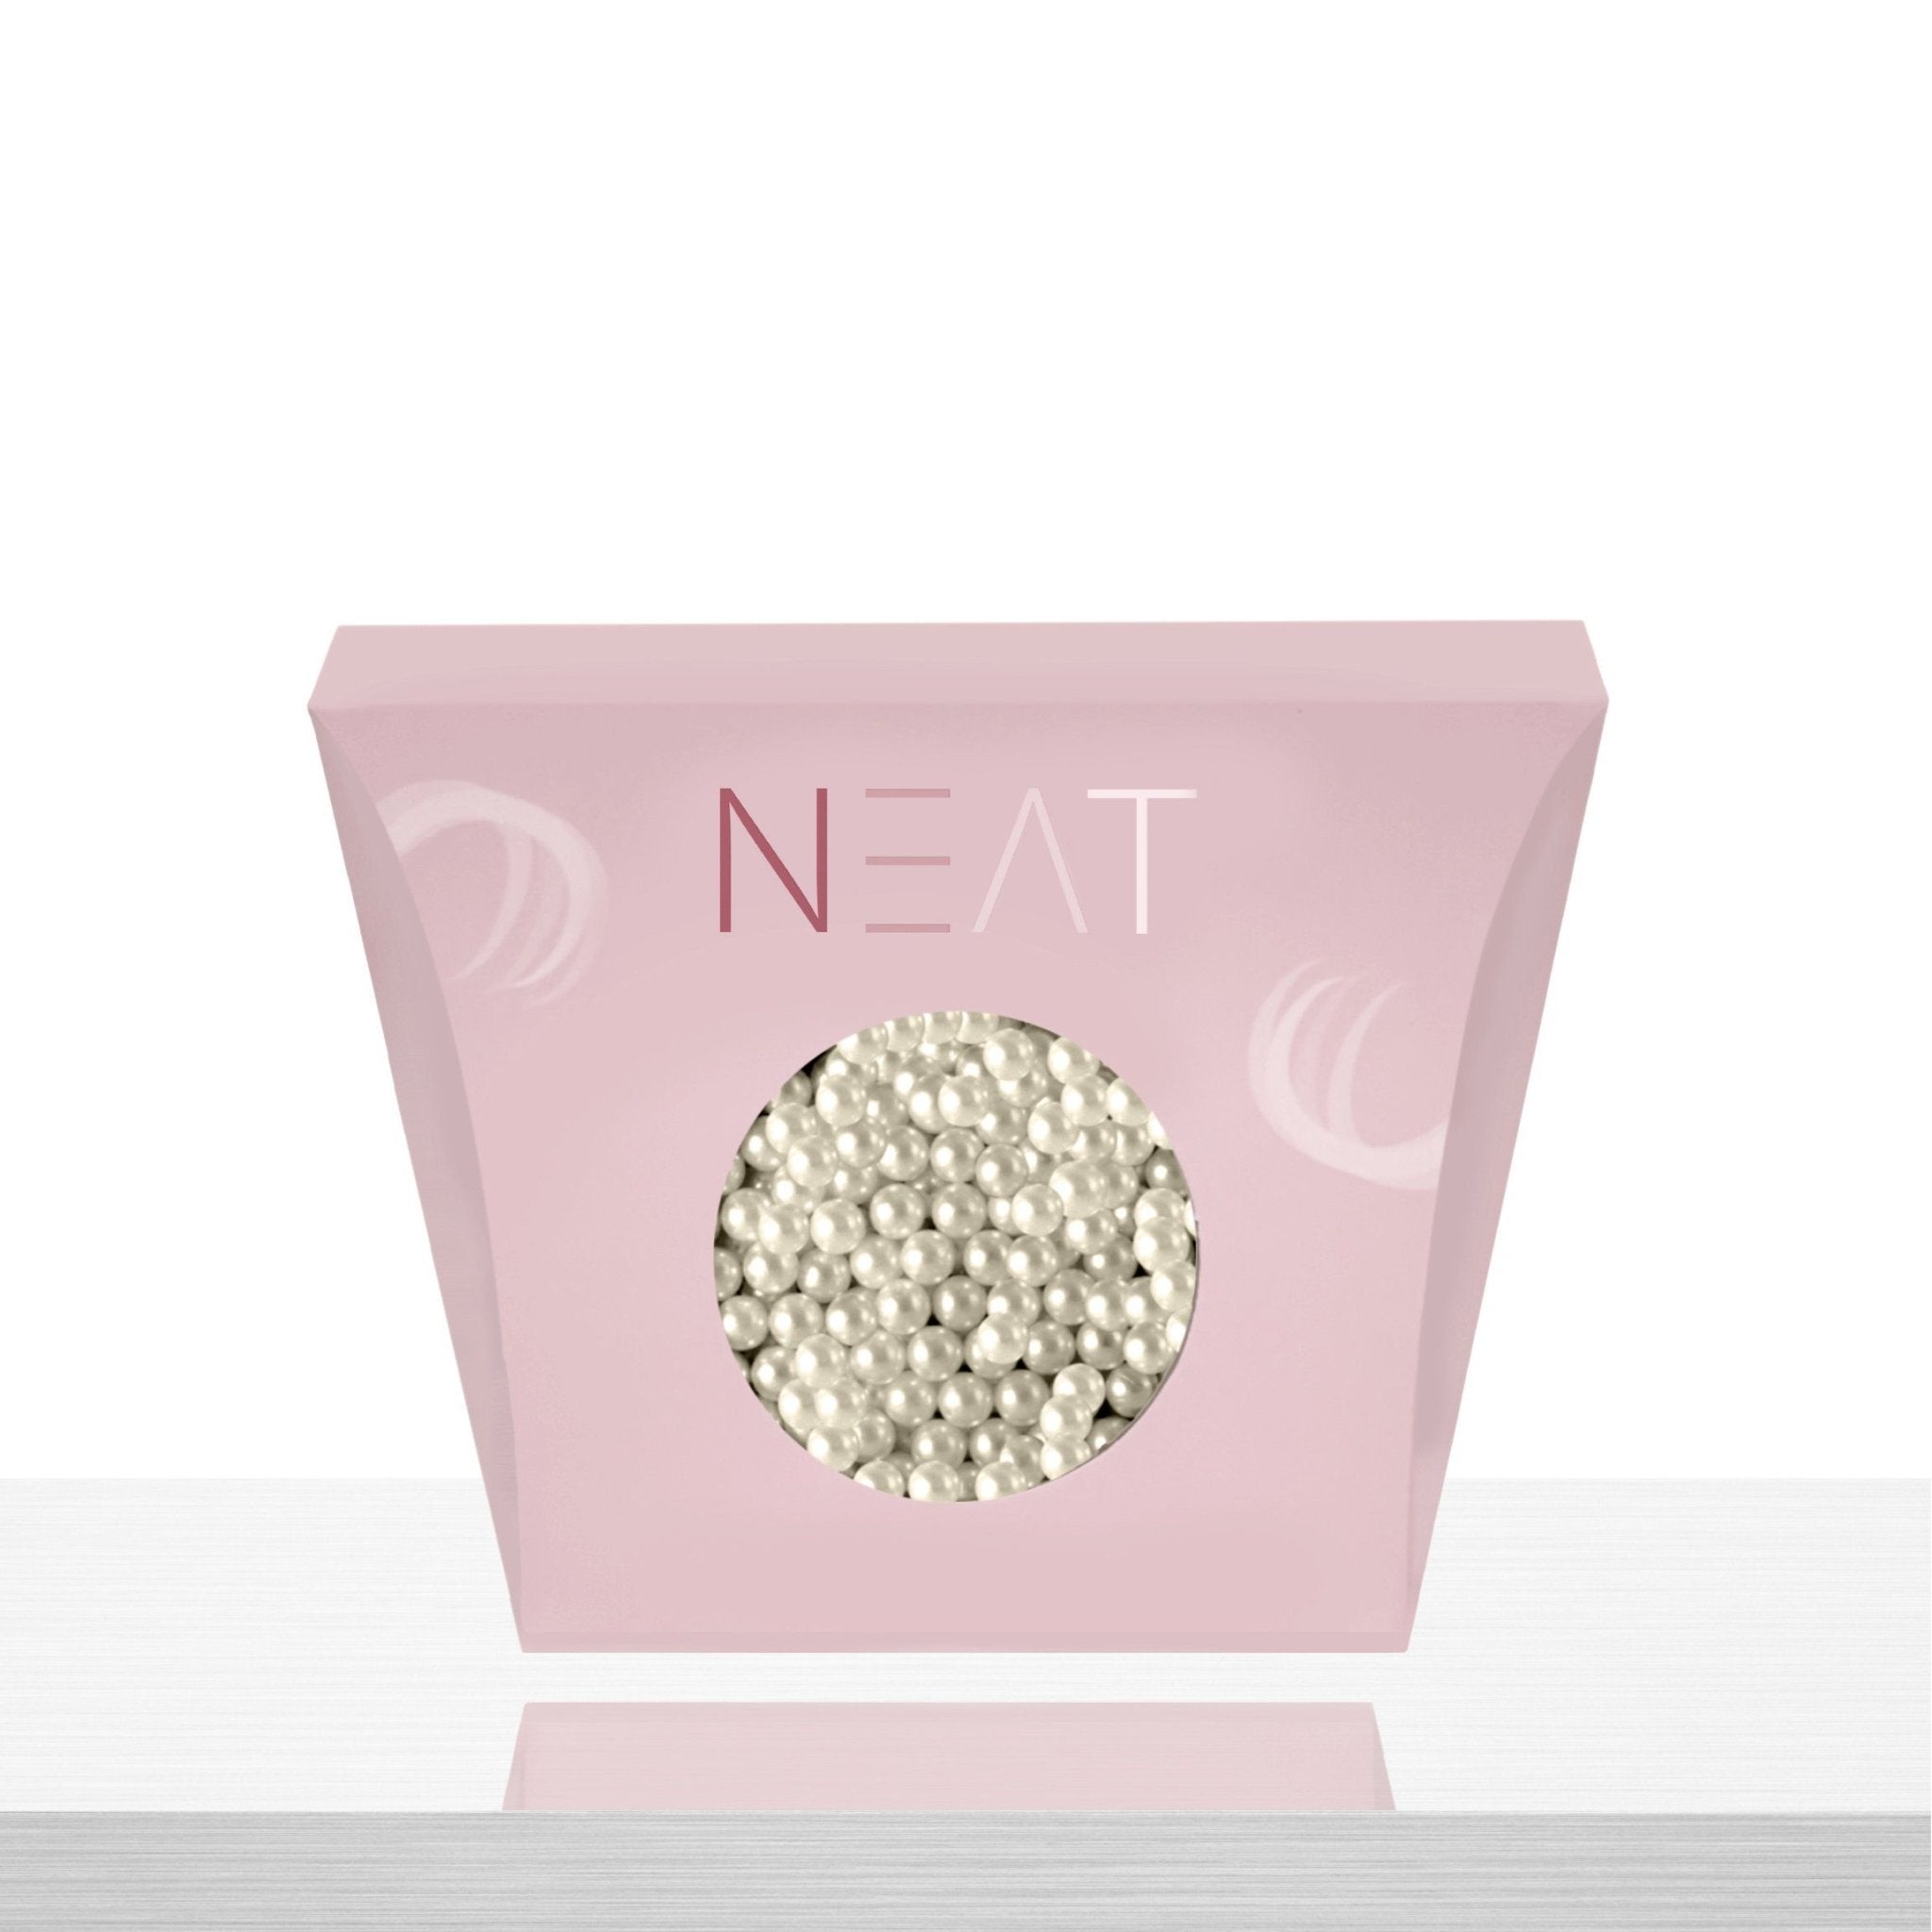 Lace Pearl - NEAT BEAUTY® LTD